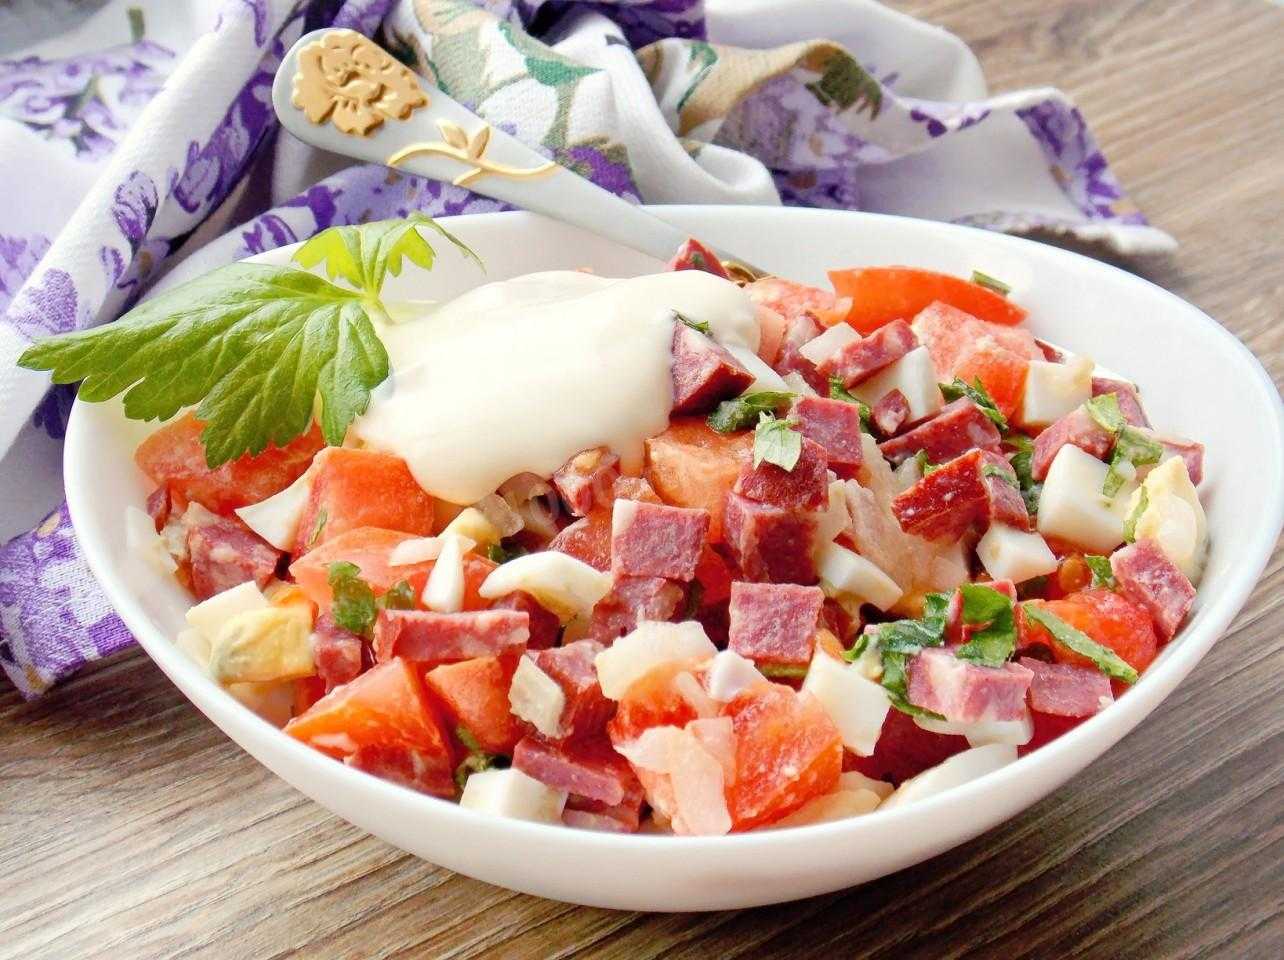 Салат с копченой колбасой и яйцом: пошаговые рецепты с фото и видео